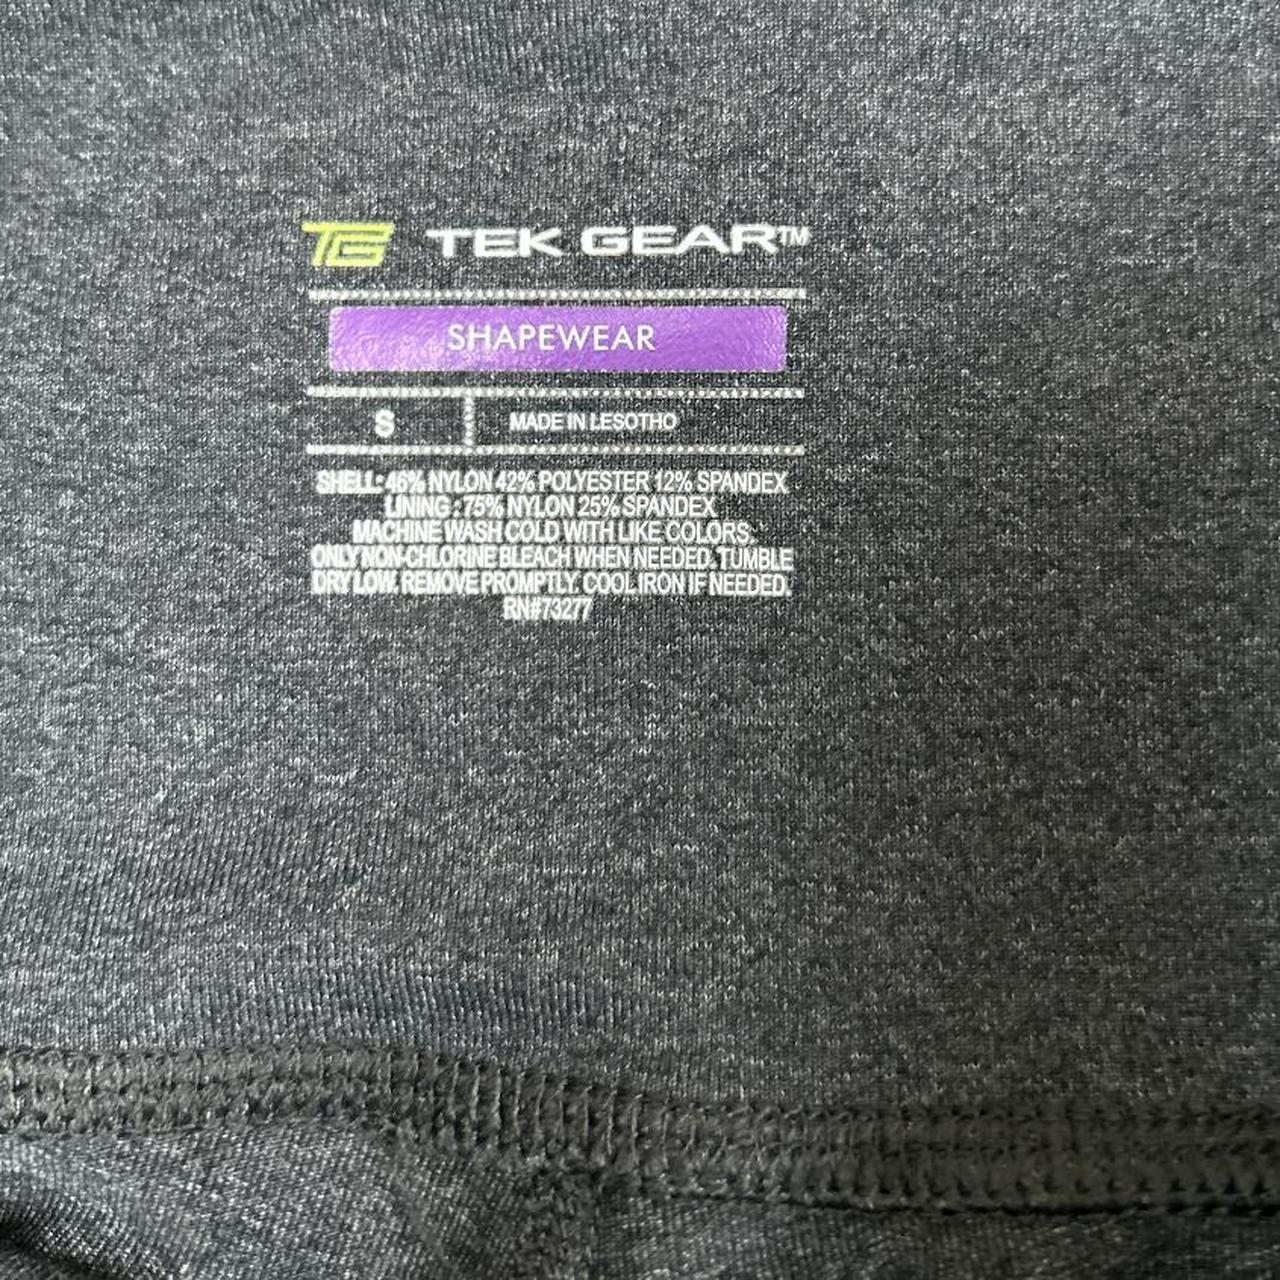 Tek Gear shapewear size small (two pockets). - Depop